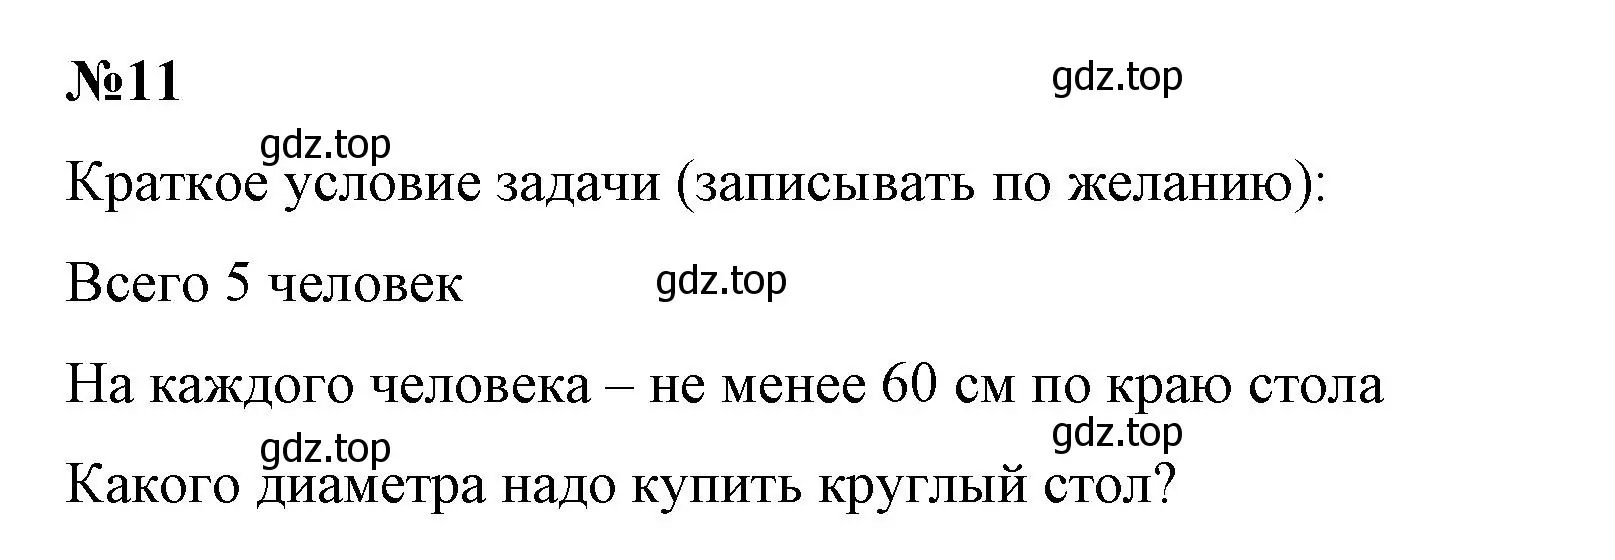 Решение номер 11 (страница 156) гдз по математике 6 класс Виленкин, Жохов, учебник 1 часть